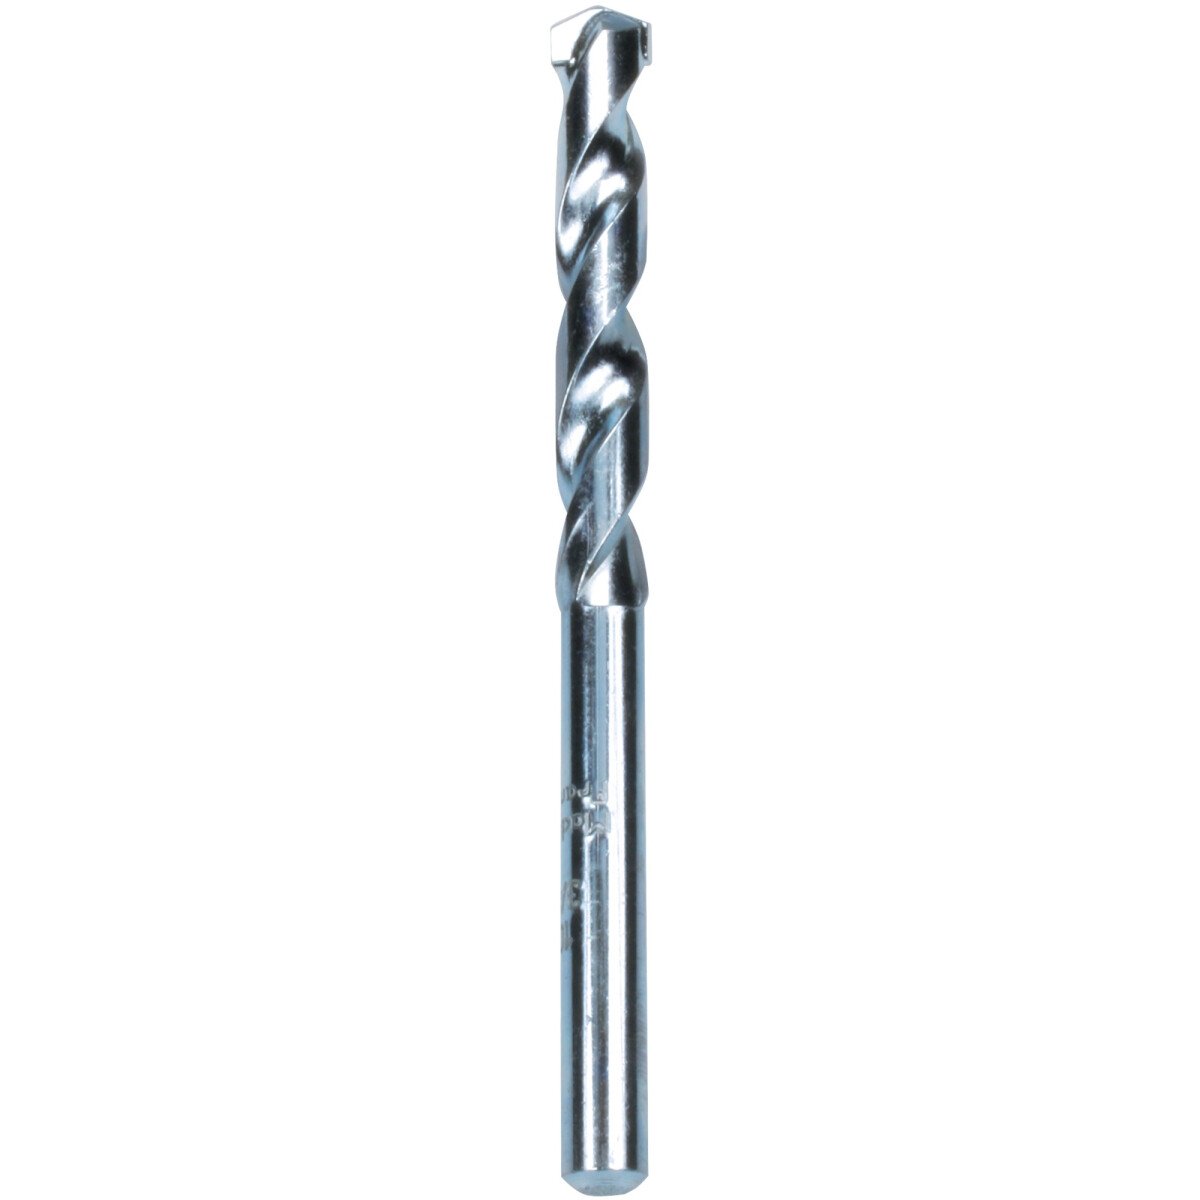 Makita P-19700 Masonry Drill Bit, standard length, 1 per pack Diameter: 5.0mm, Bit Length: 85mm